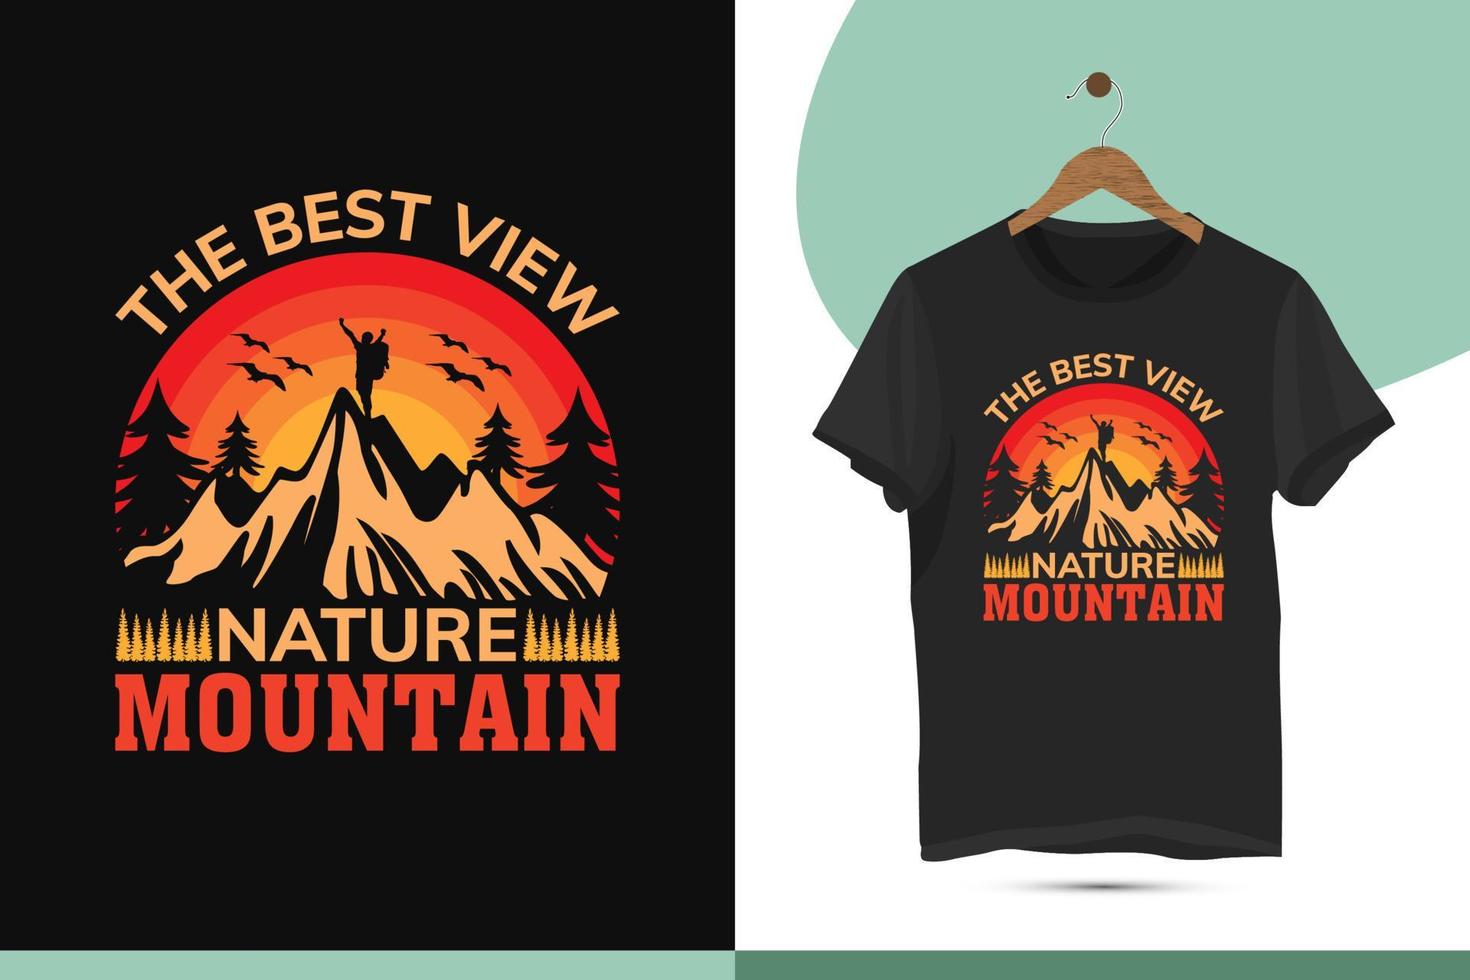 de bäst se natur berg - unik retrostil berg t-shirt design mall. fågel och kulle silhuett vektor illustration konst. hög kvalitet skriva ut för en skjorta.